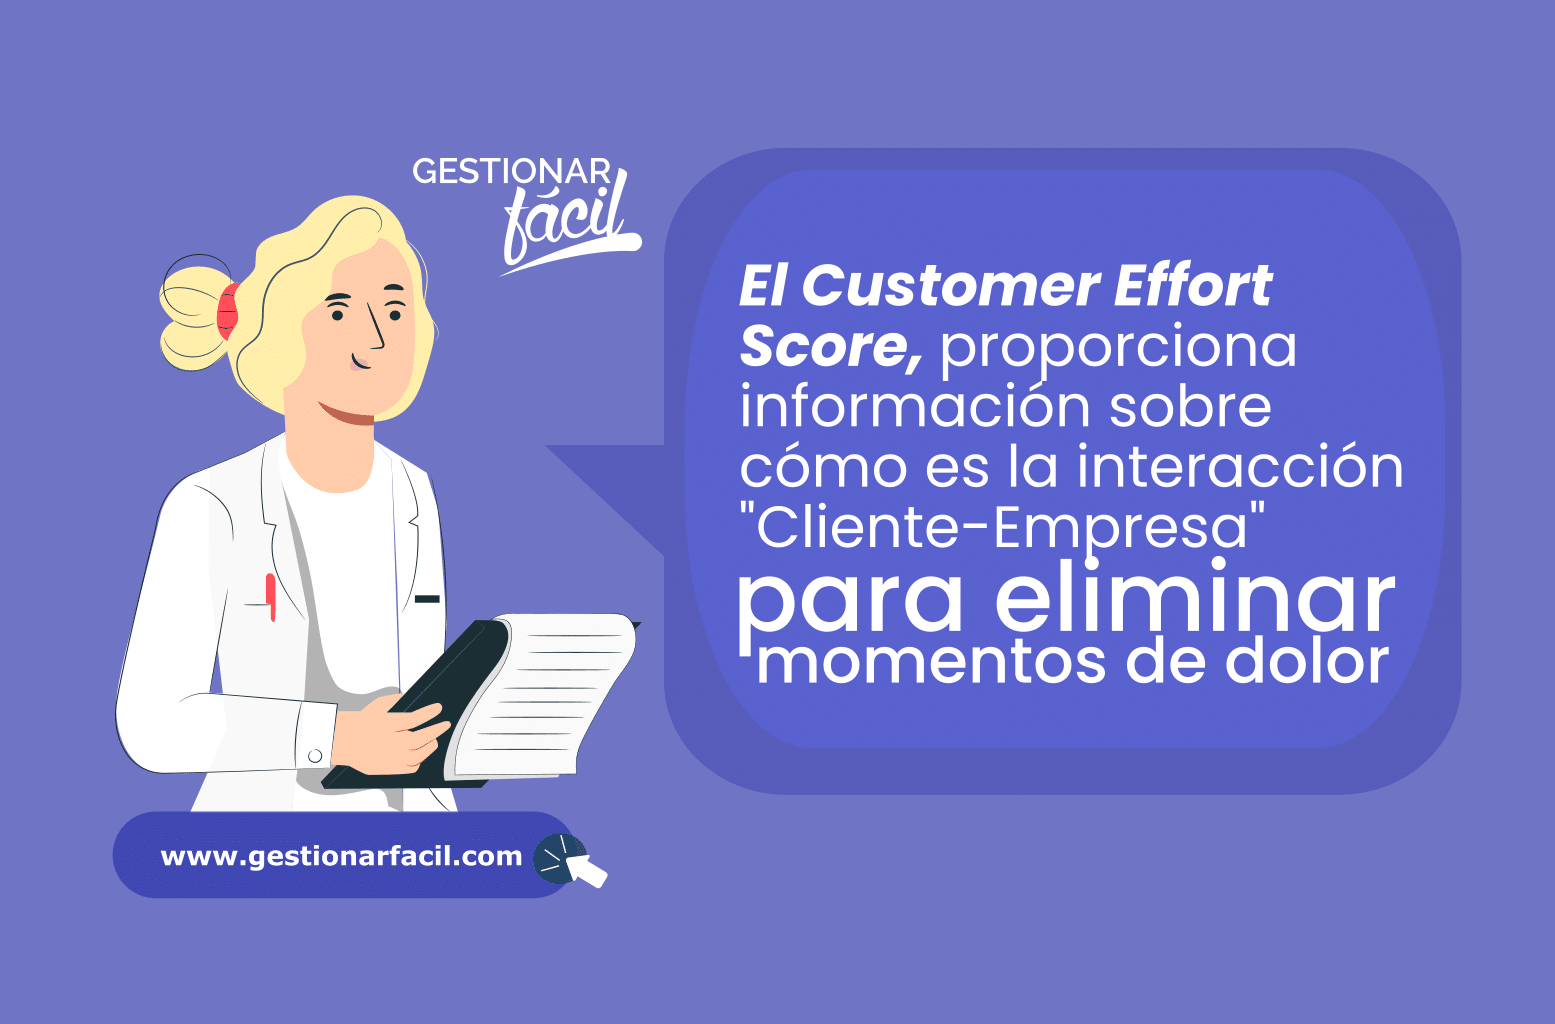 El Customer Effort Score proporciona información sobre cómo es la interacción "cliente-empresa" para eliminar "momentos de dolor".